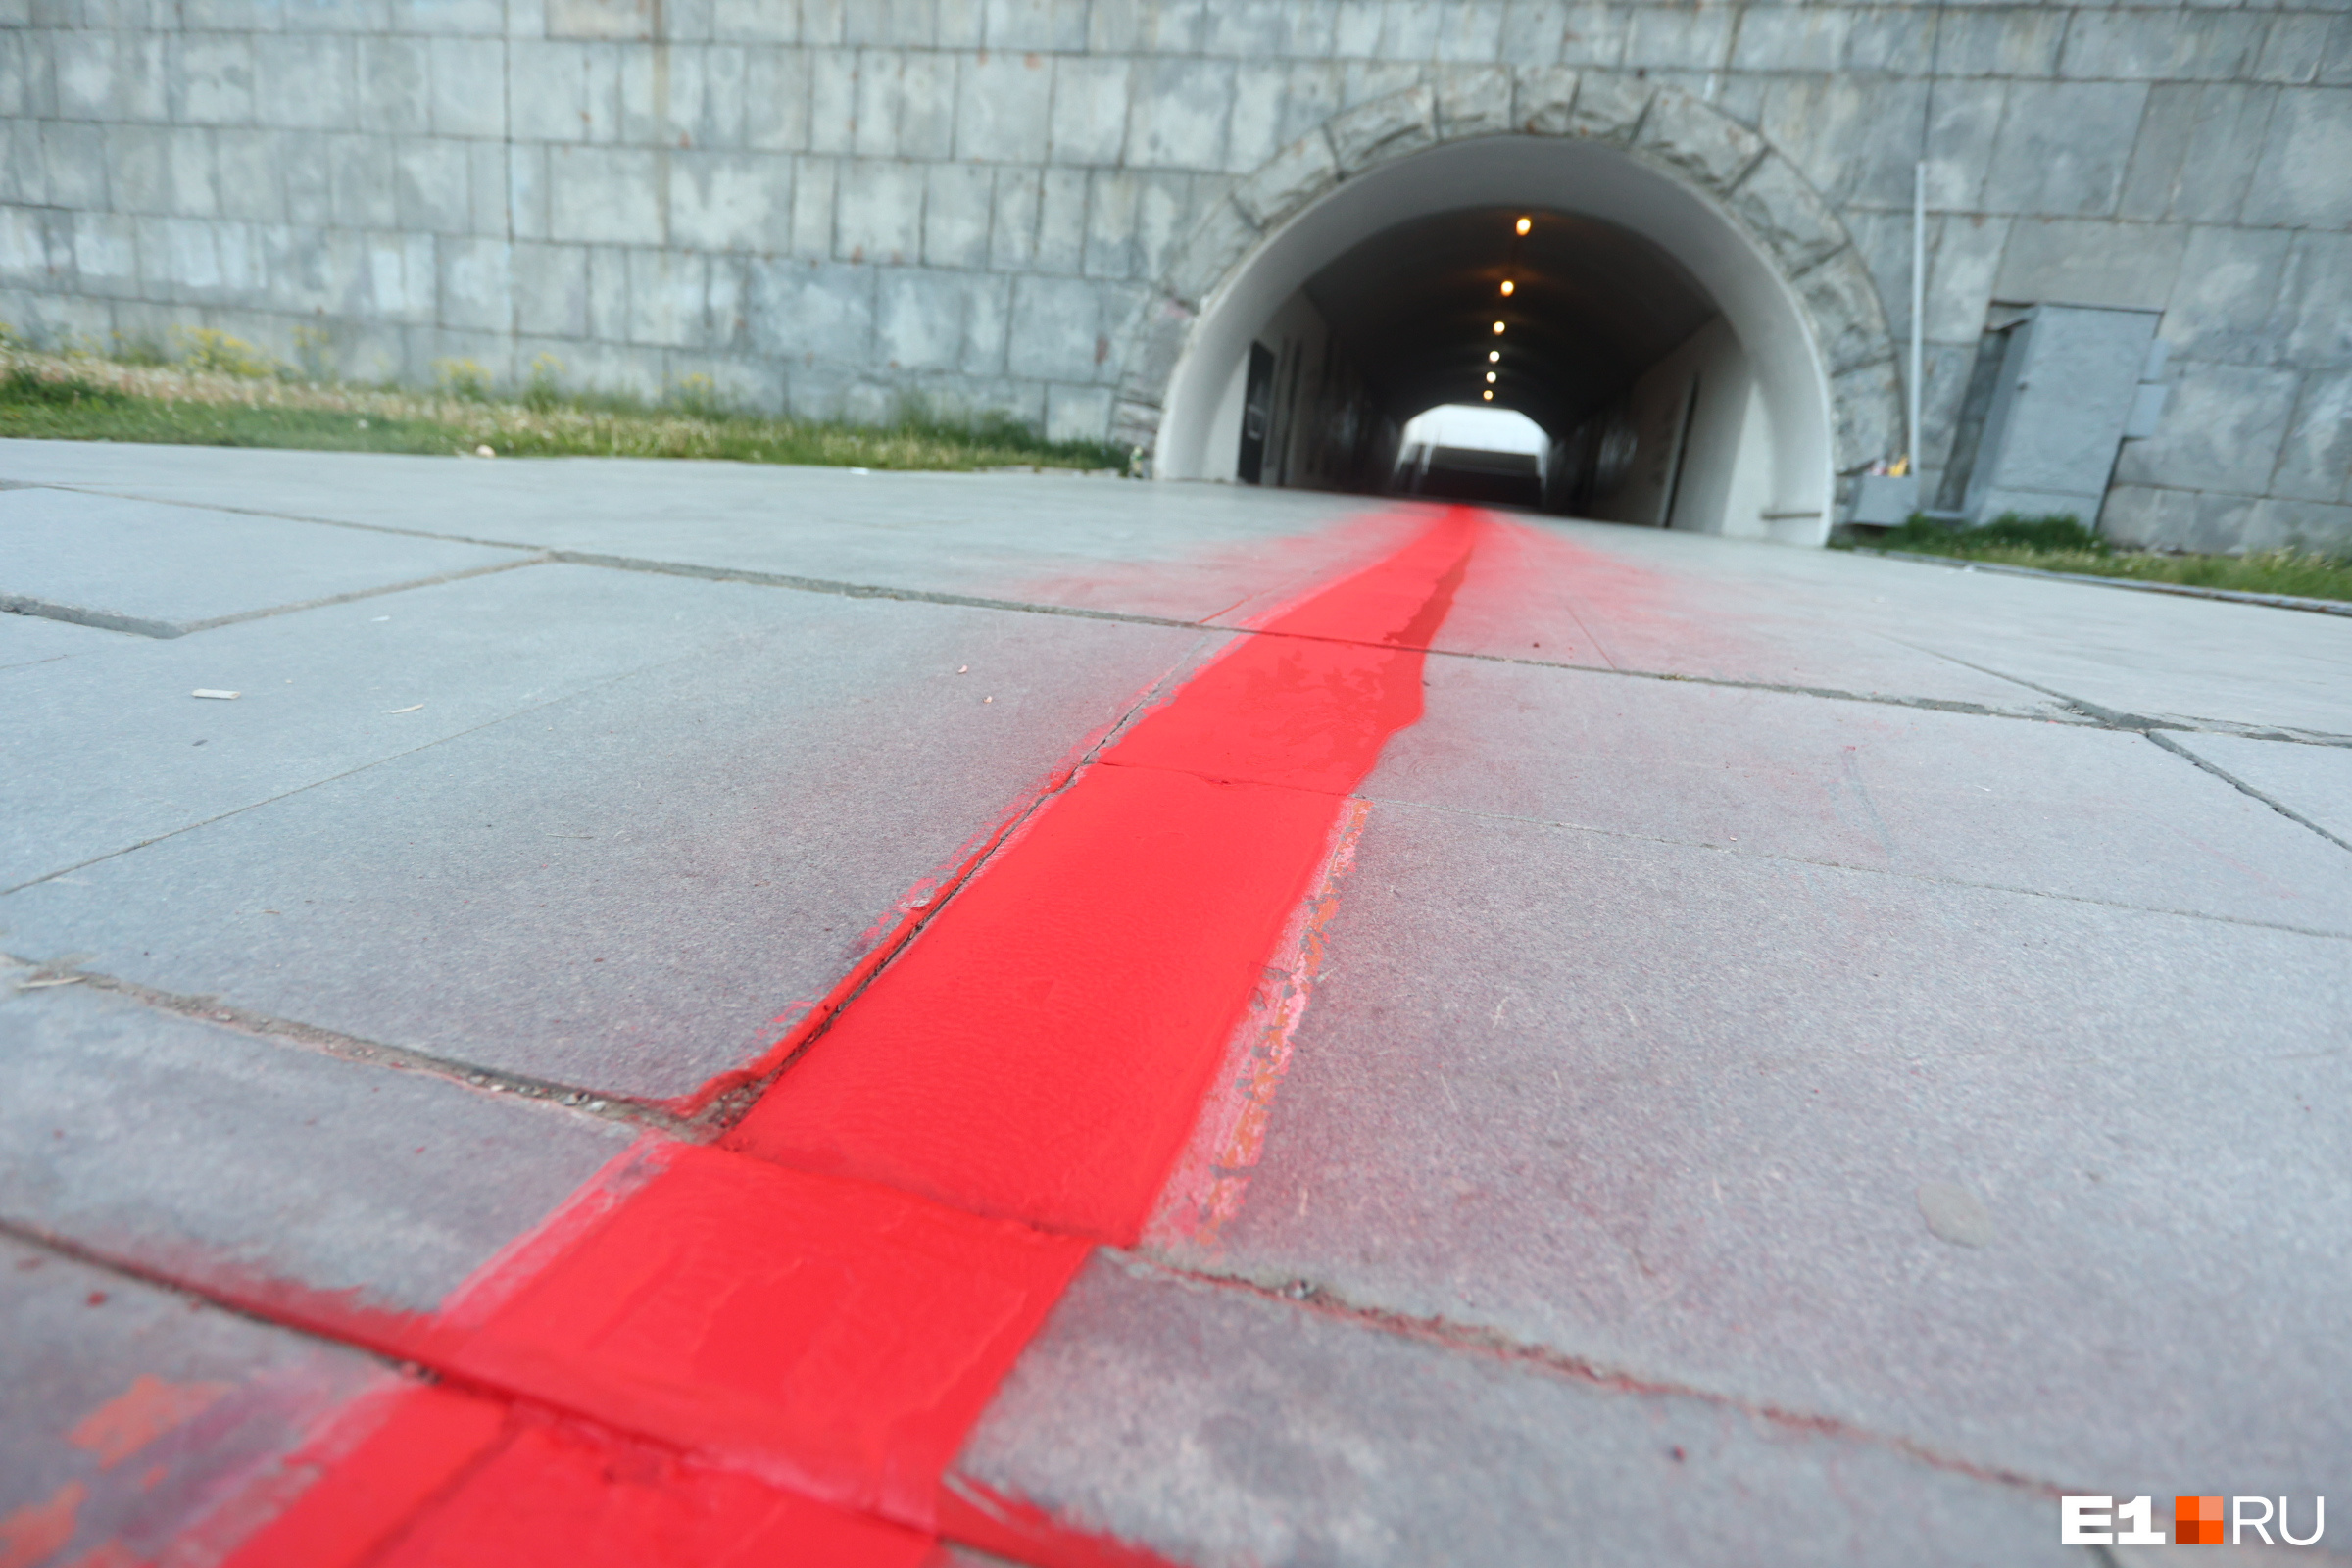 Впервые «Красная линия» появилась в Екатеринбурге летом 2011 года